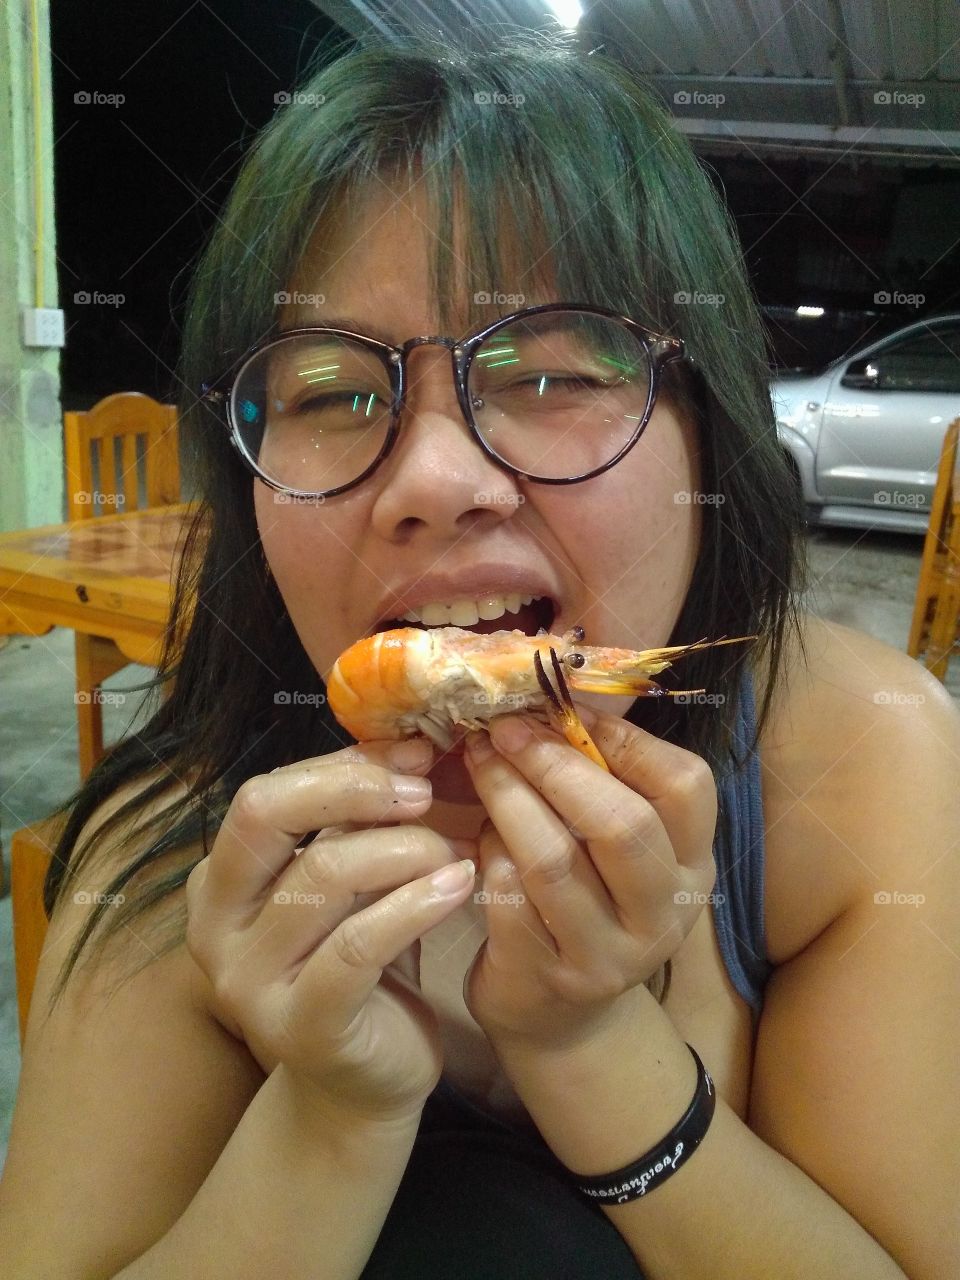 she really enjoyed her shrimps.